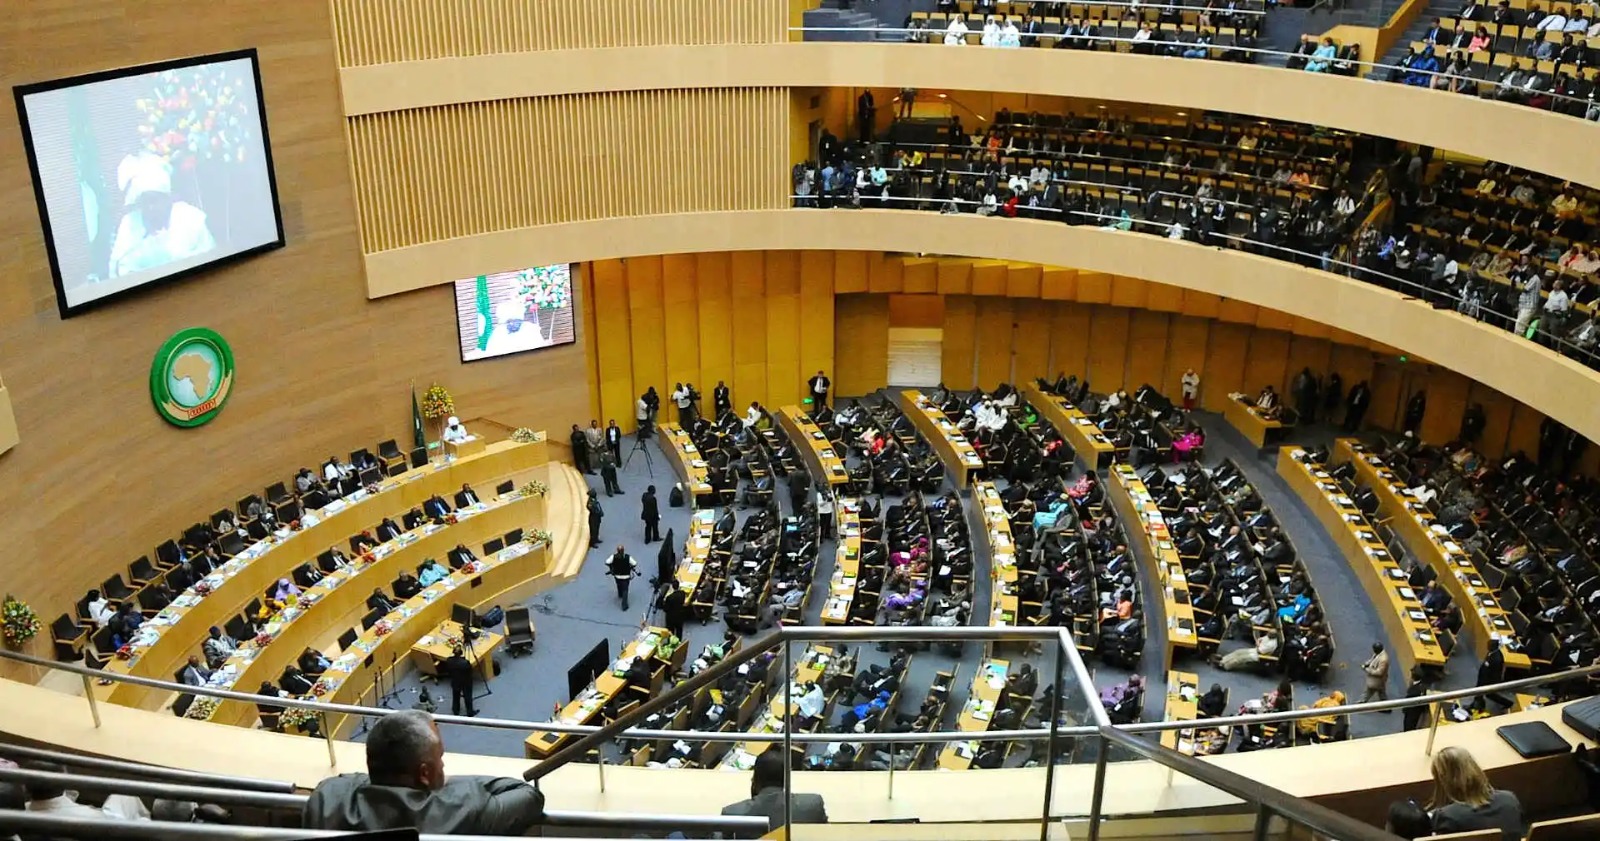 استعراض المبادرة الملكية حول إفريقيا الأطلسية أمام البرلمان الإفريقي